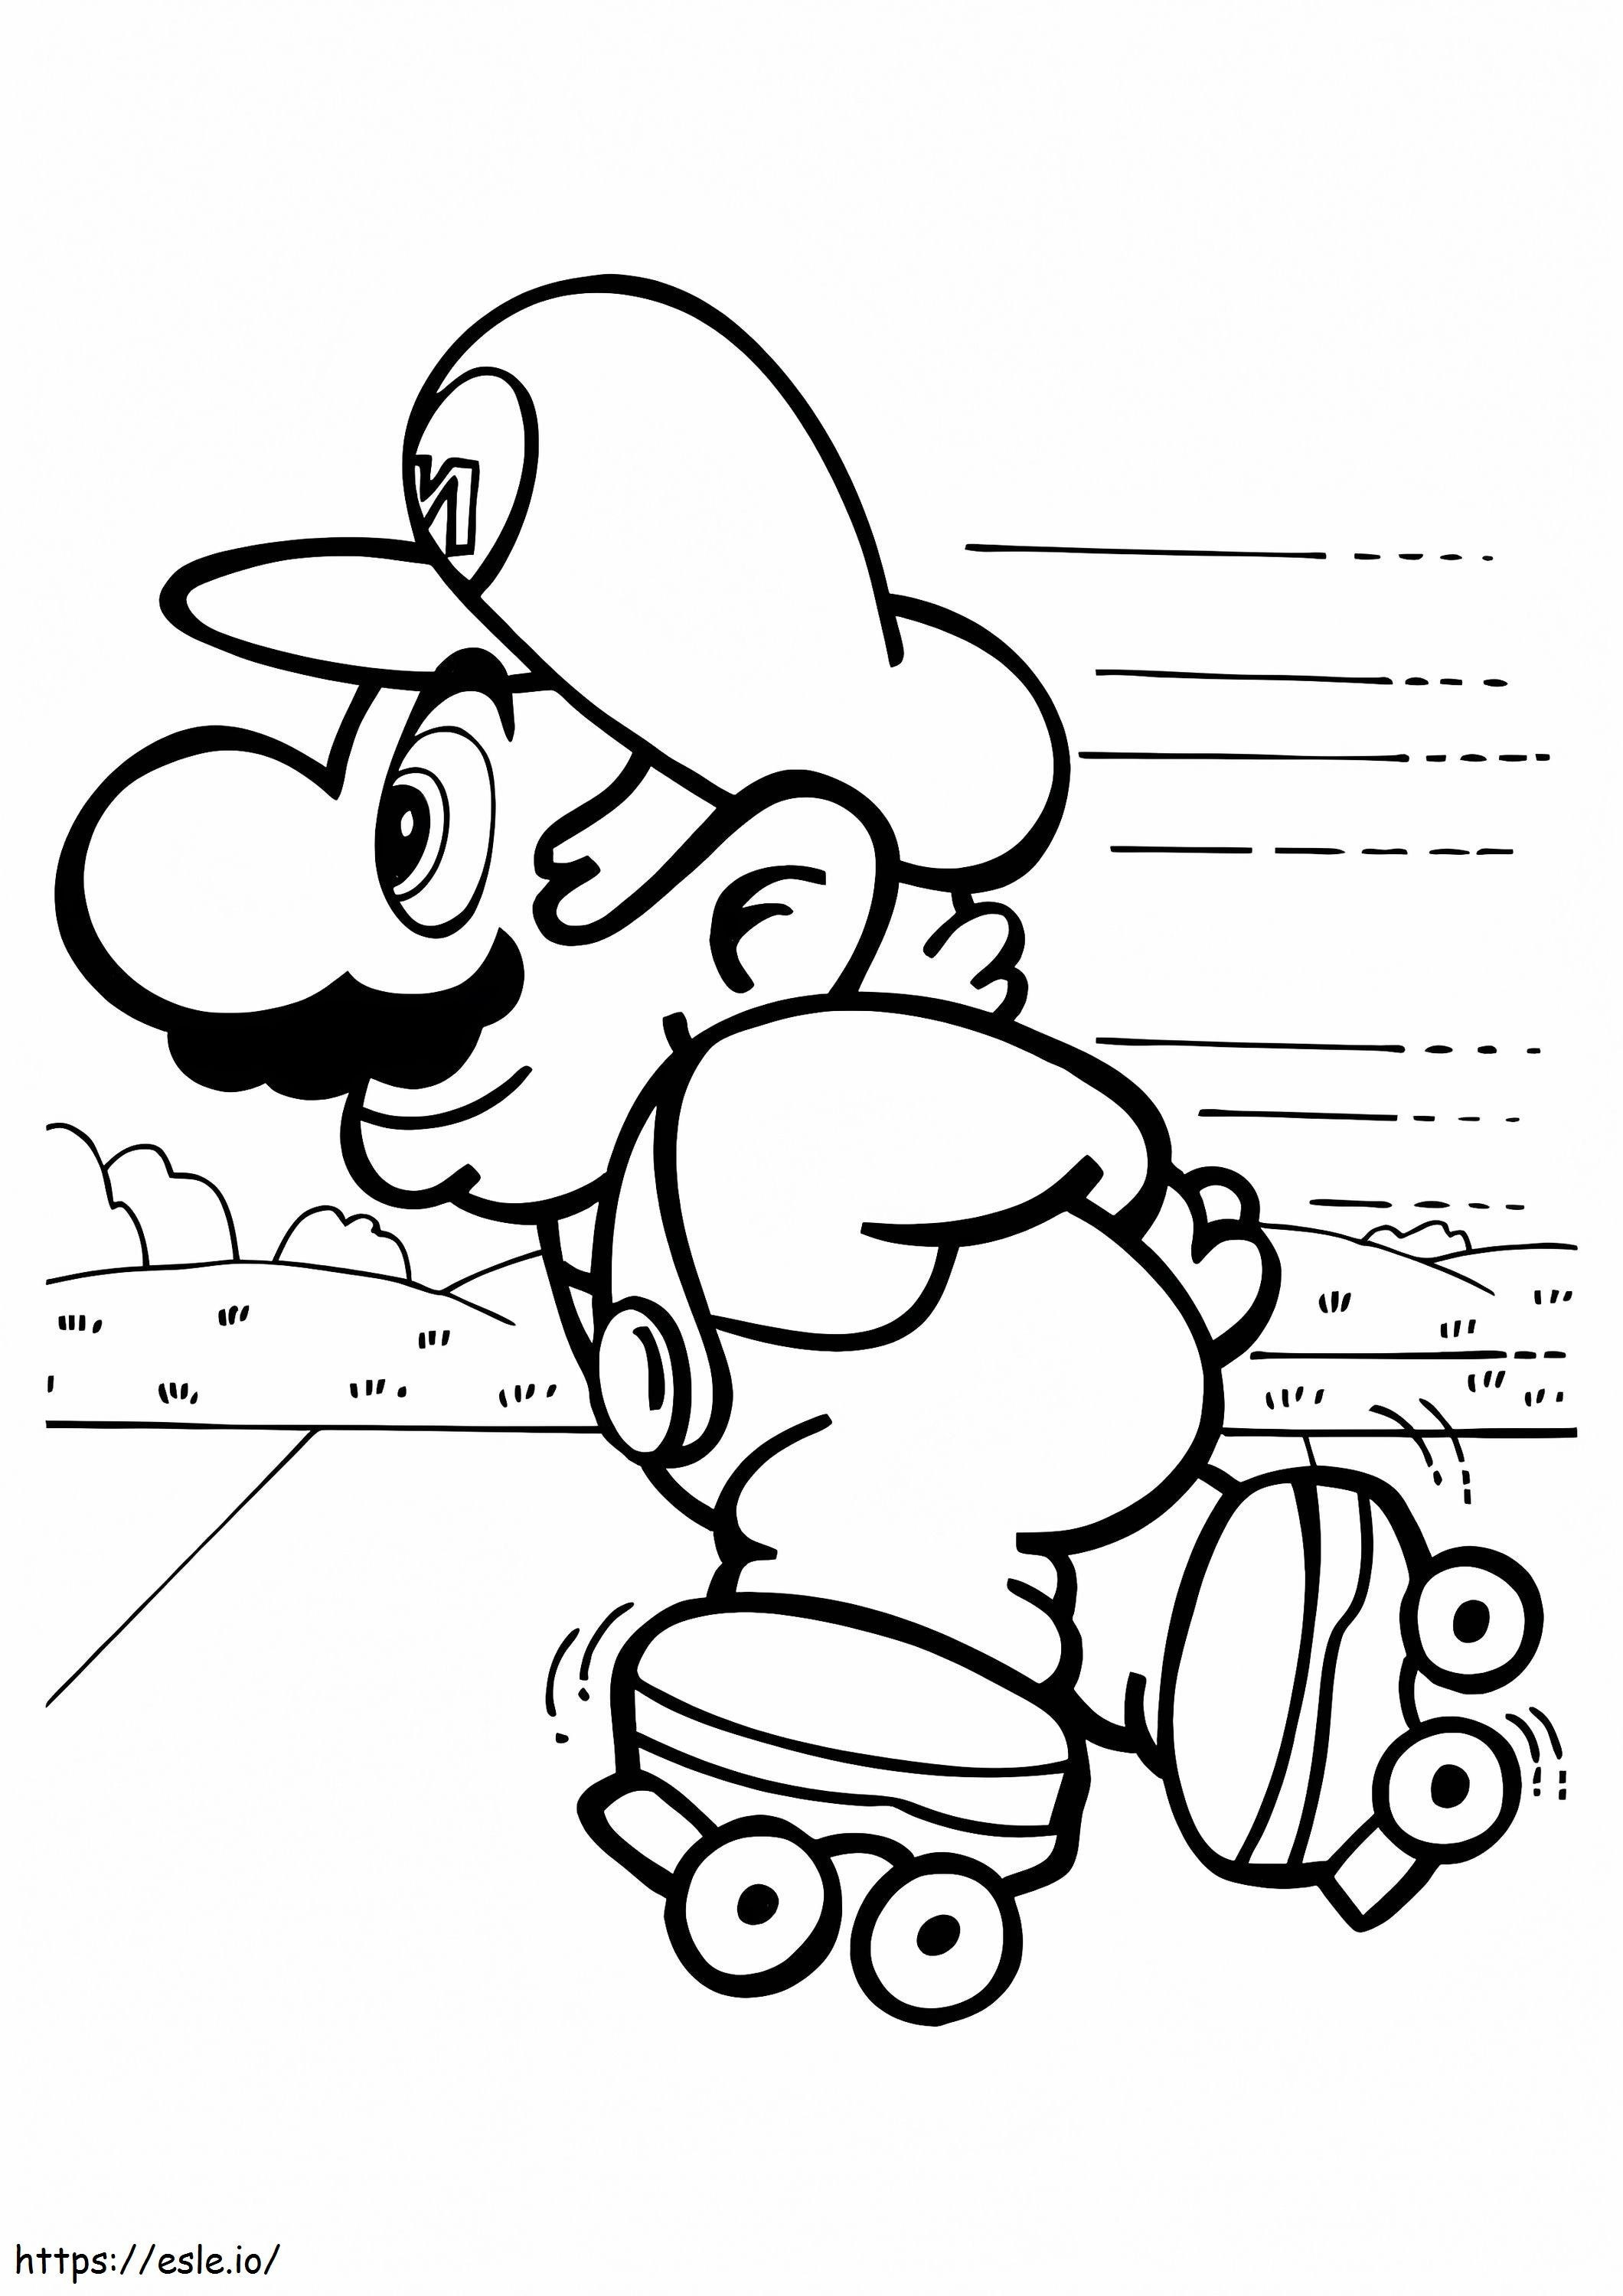 Mario sui pattini a rotelle da colorare